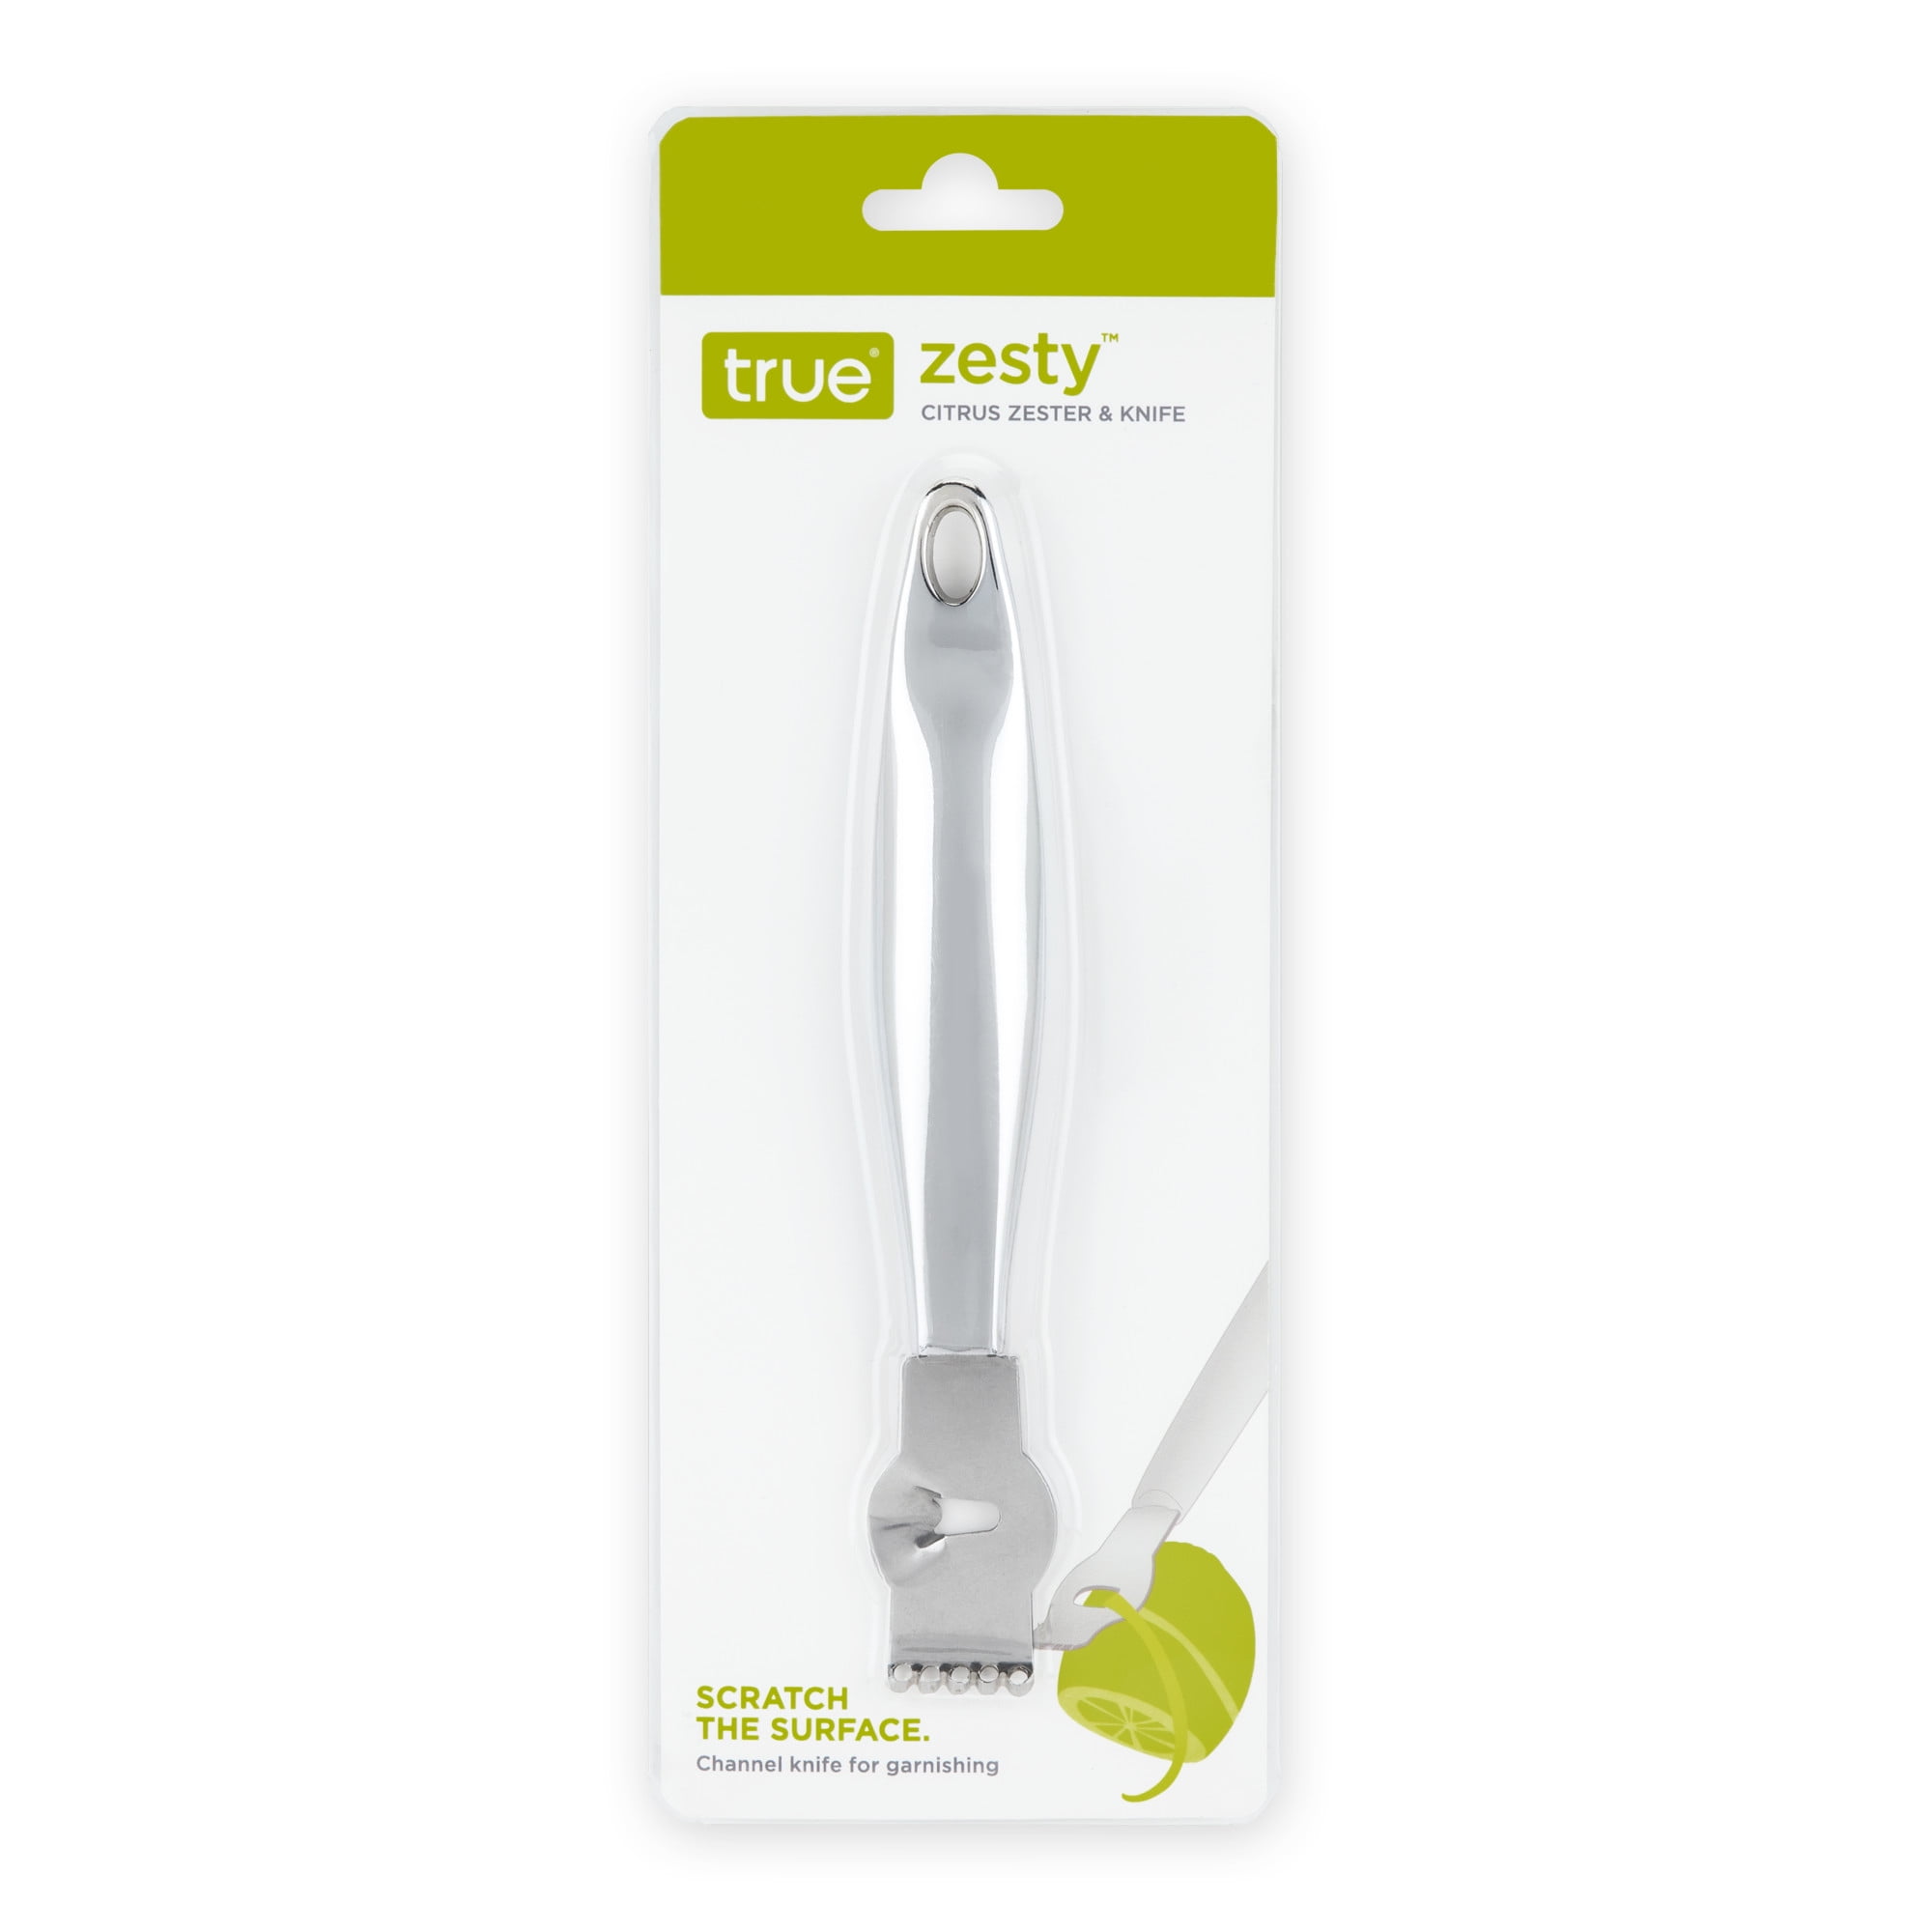 Zesty™: Citrus Zester & Channel Knife